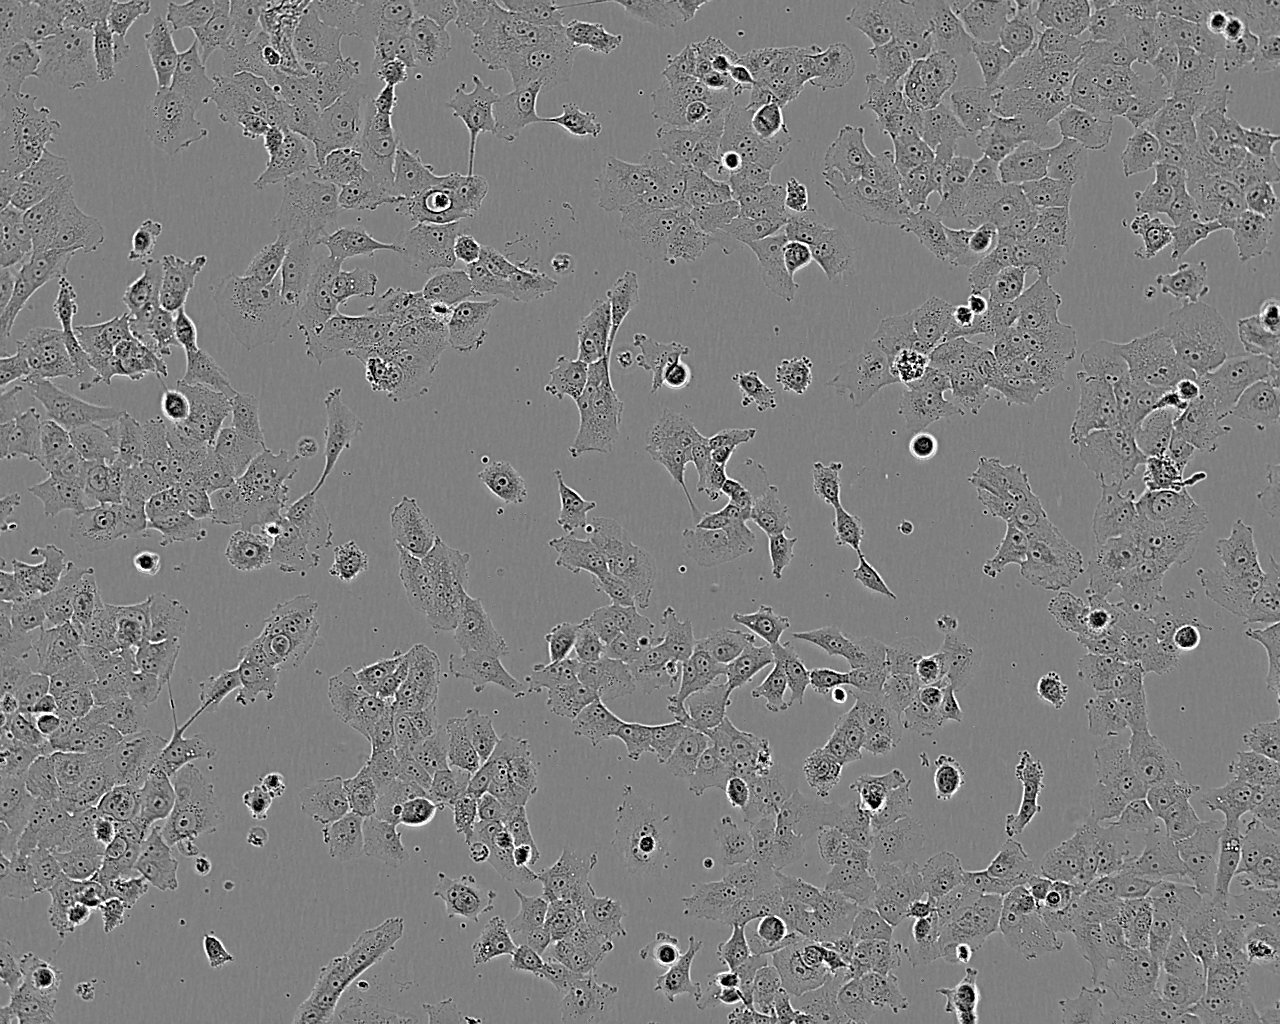 RKO-AS45-1 epithelioid cells人结肠癌转基因细胞系,RKO-AS45-1 epithelioid cells